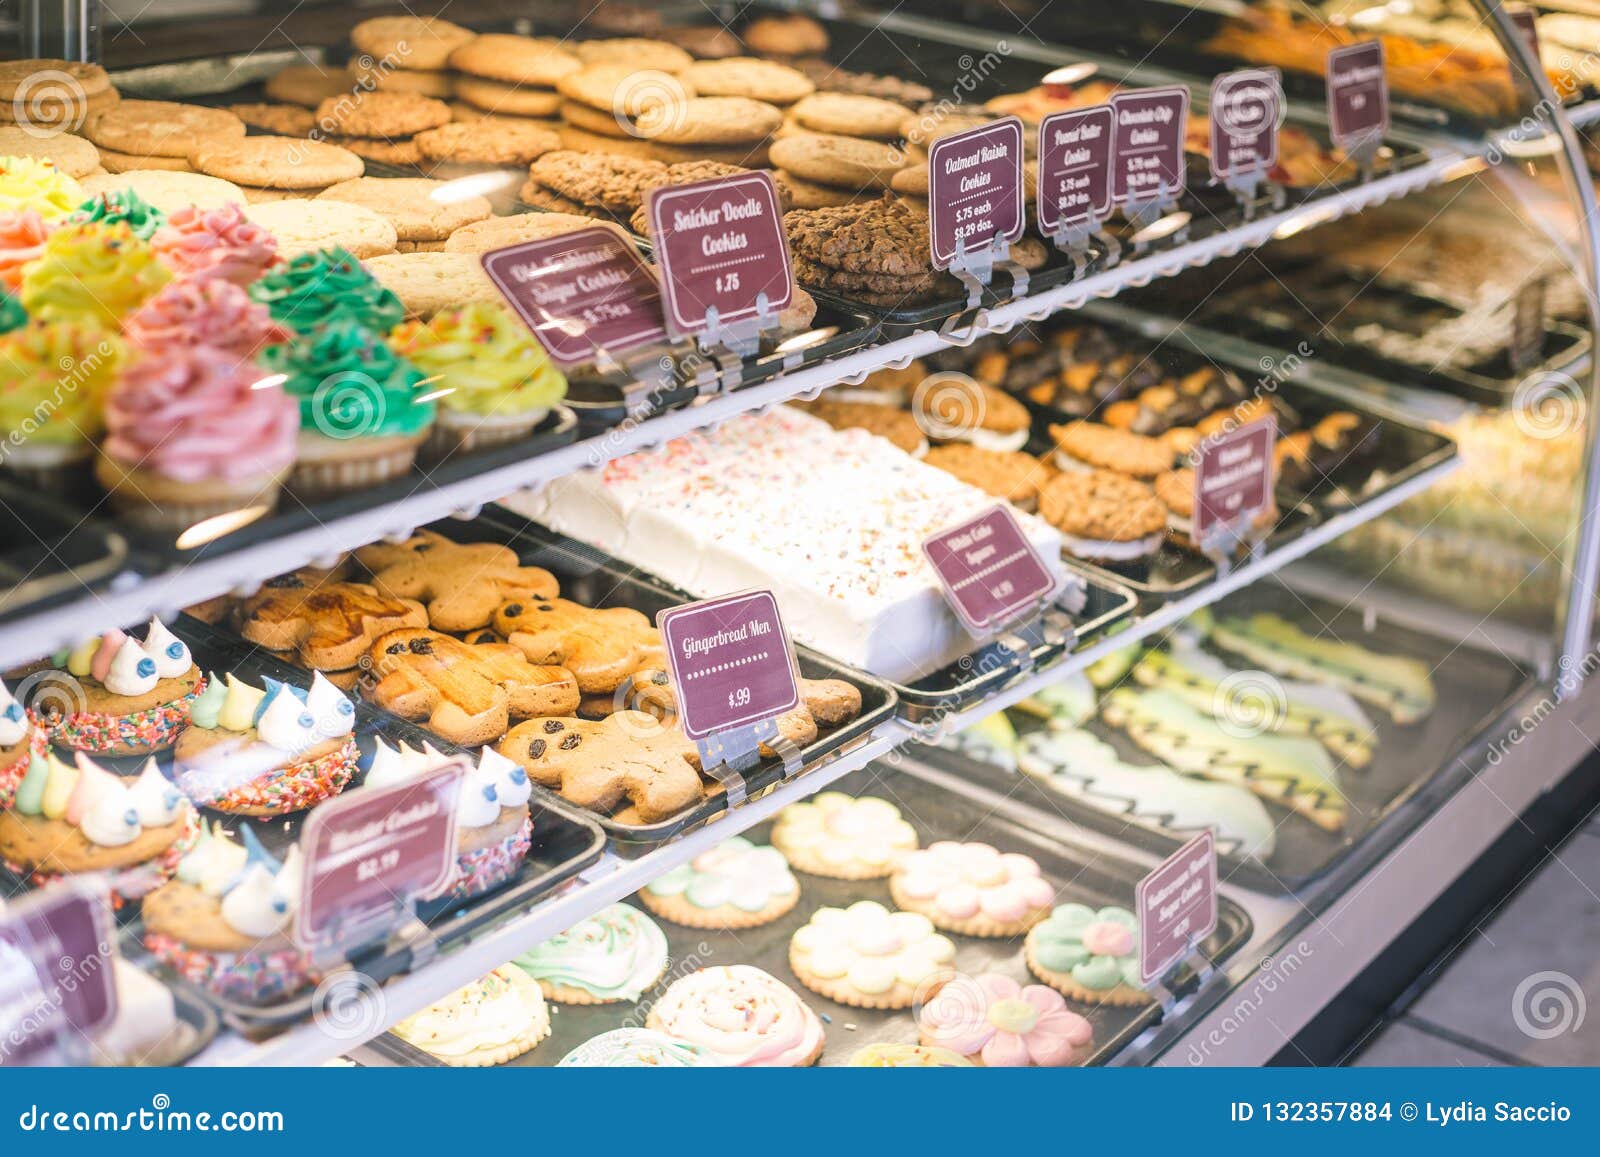 Fermez Vous De La Vitrine De Boulangerie Avec Des Biscuits Et Des Petits Gateaux Photo Stock Image Du Chocolat Cupcakes